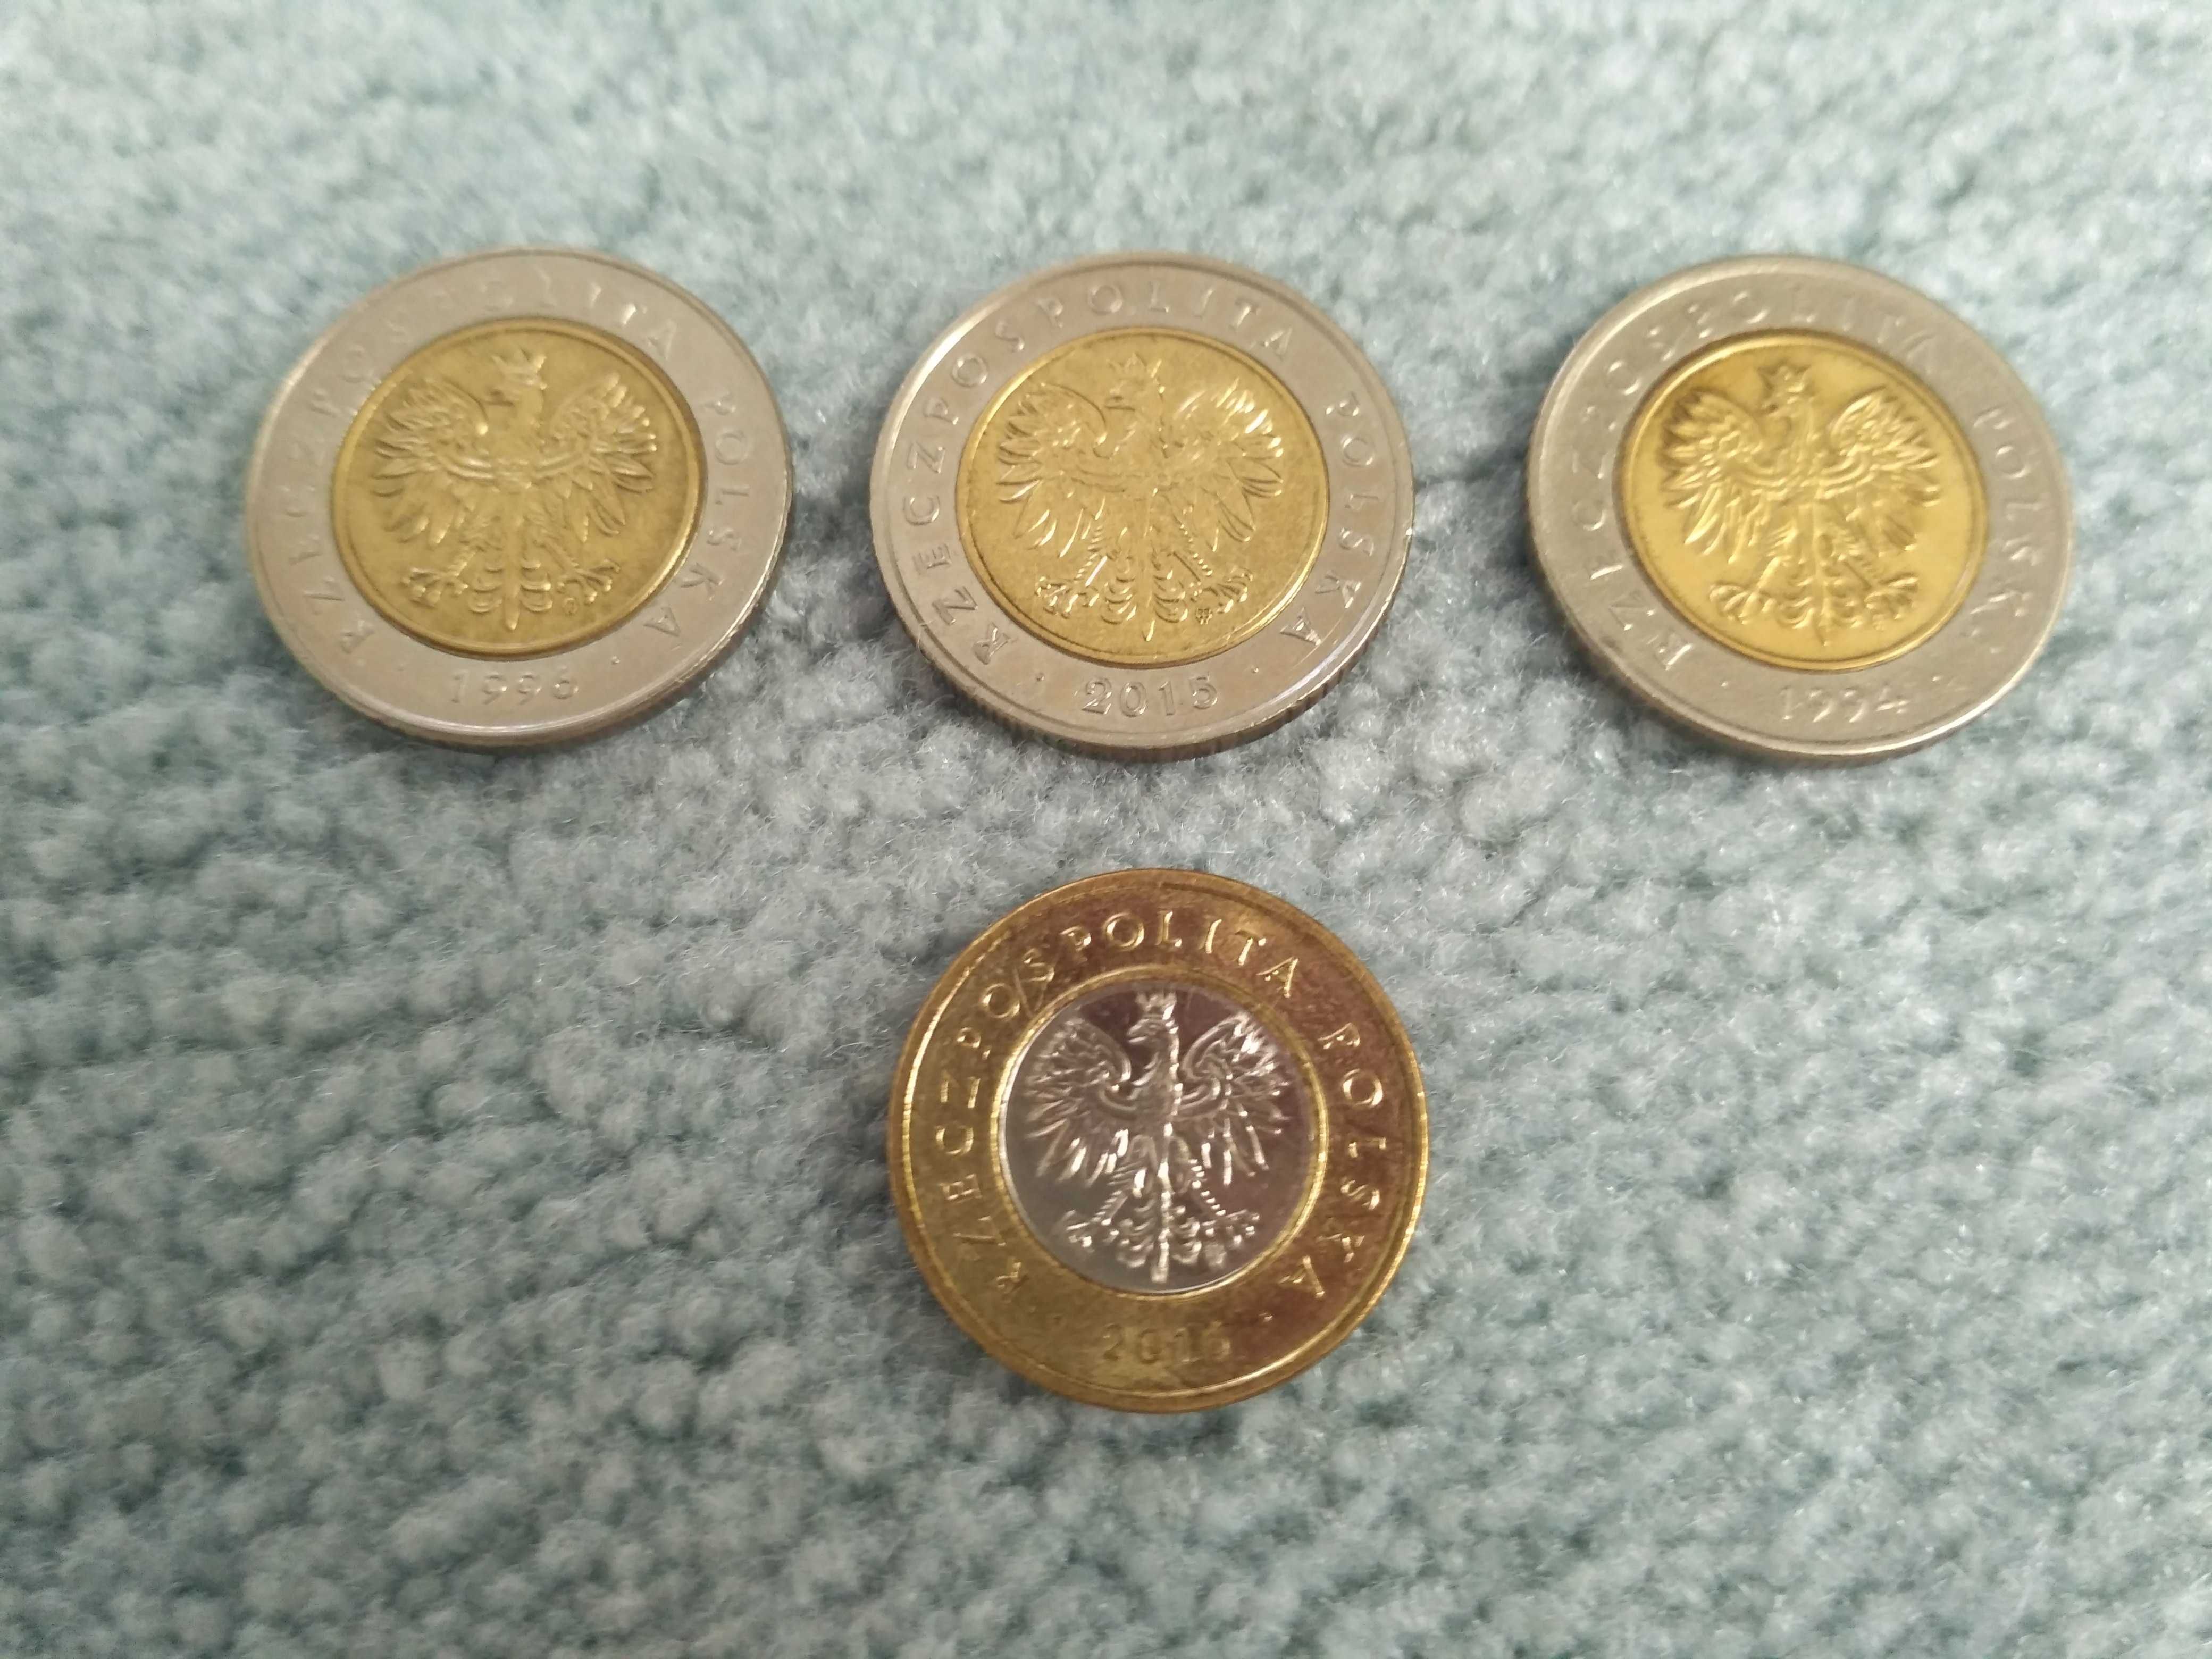 Монети Польша по 5 та 2 злотих, всього 17 злотых